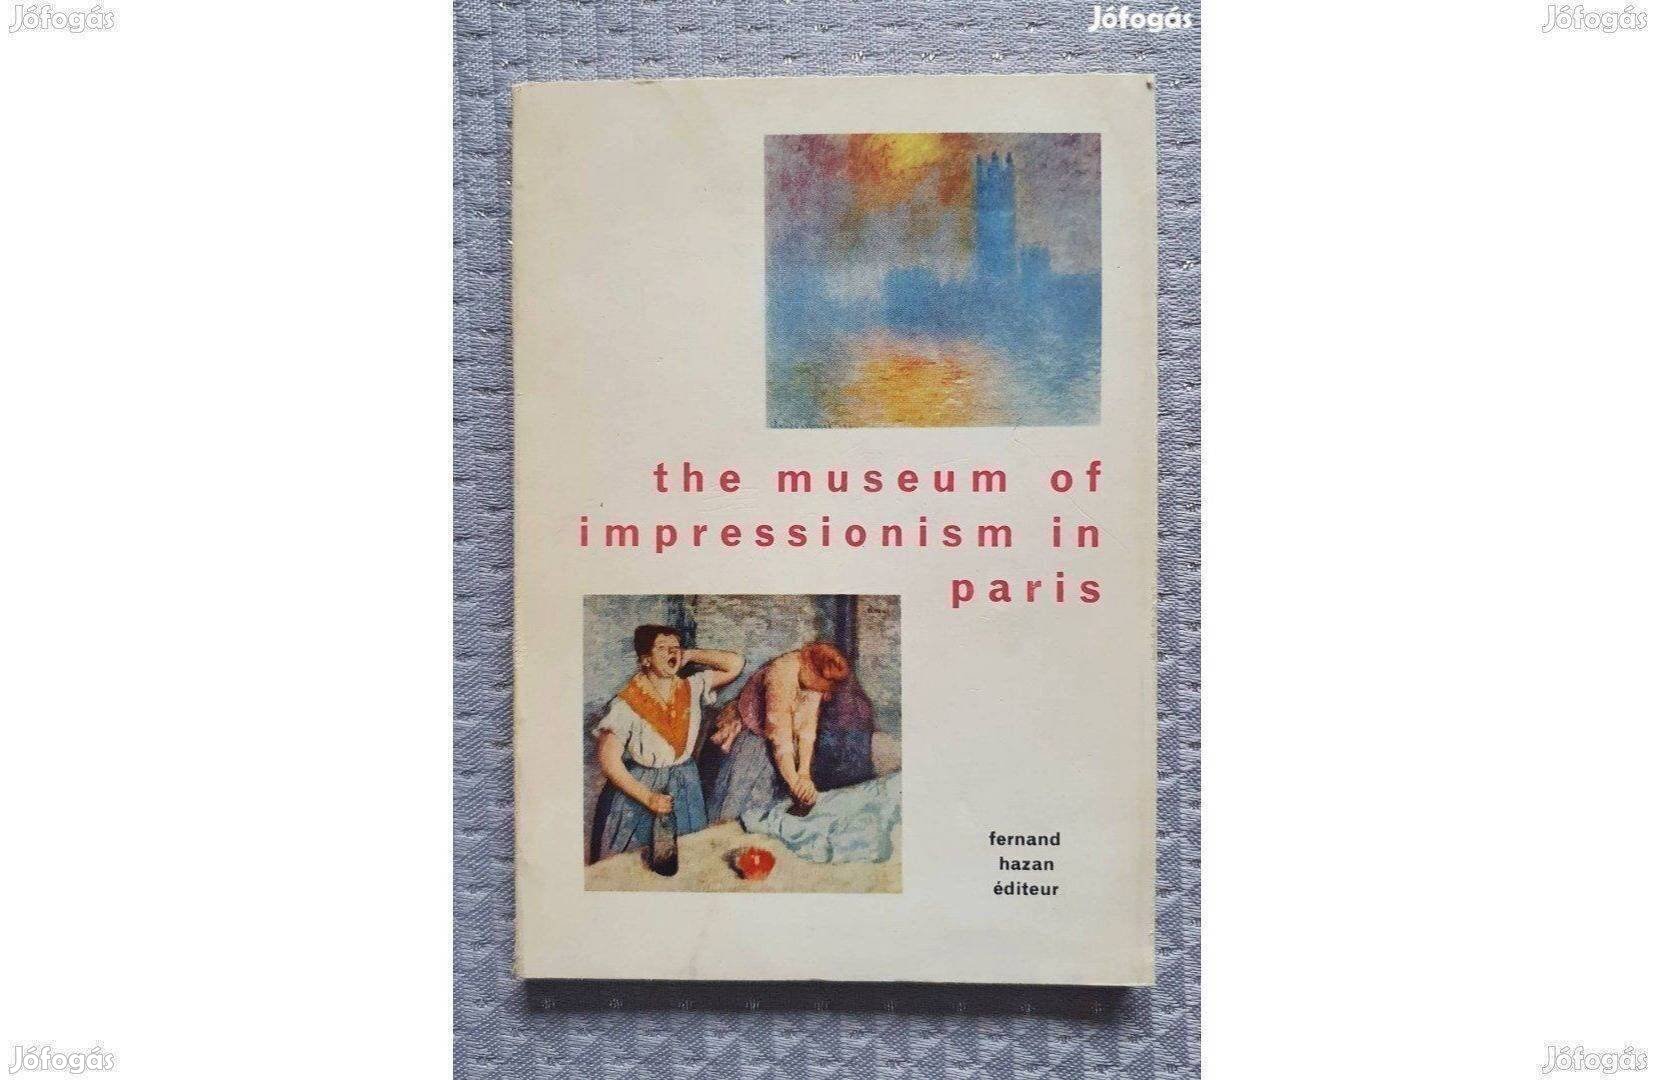 The museum of impressionism in paris angol nyelvű kiállítási katalógus